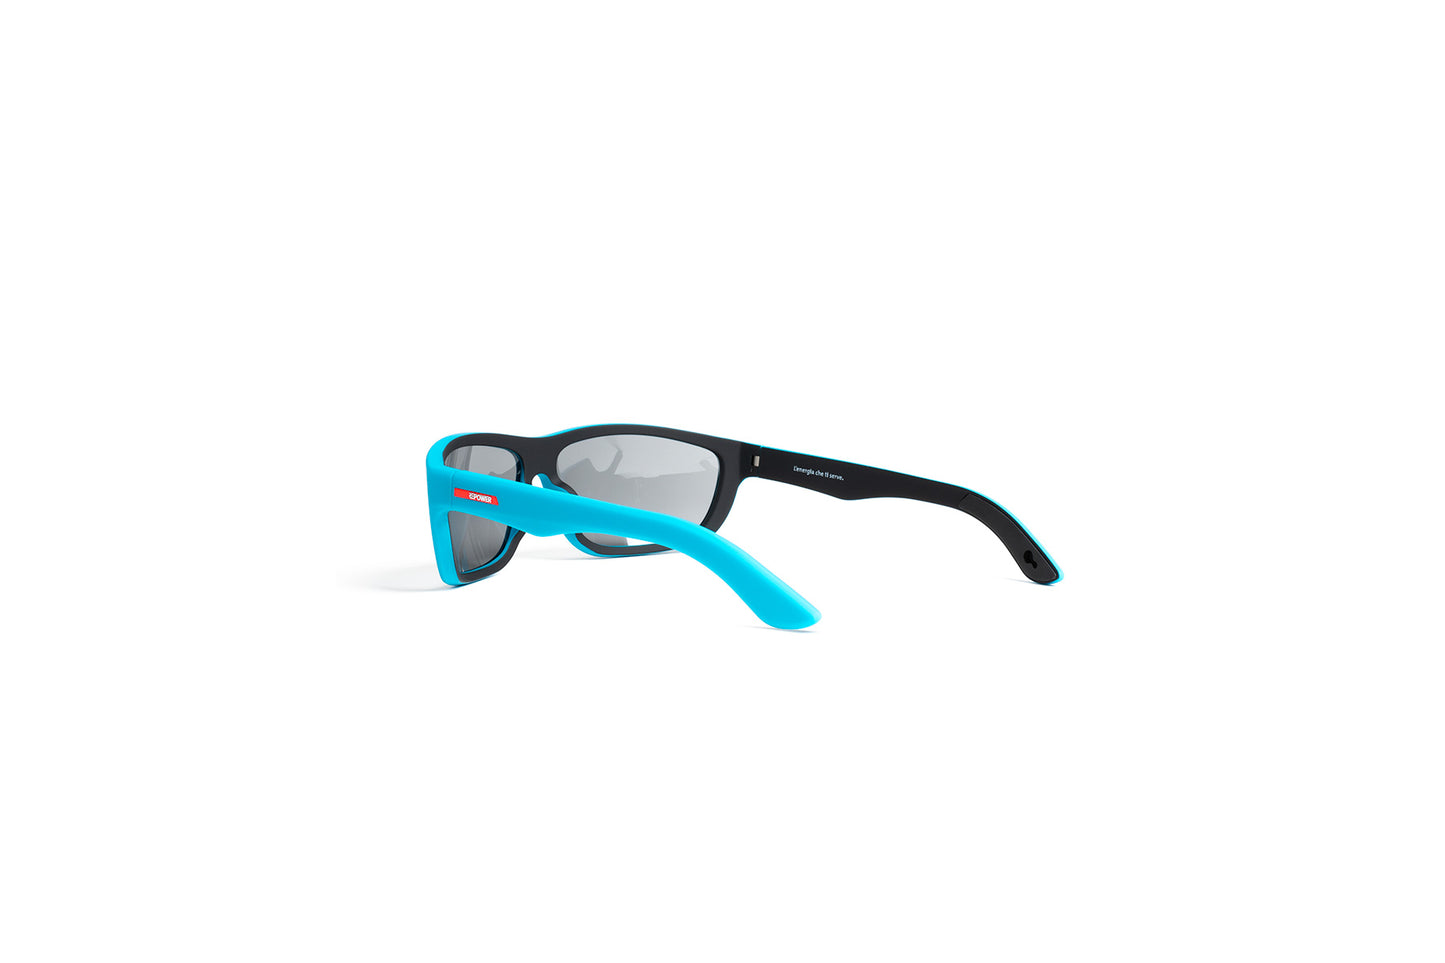 Occhiali Repower sport azzurro vista posteriore 